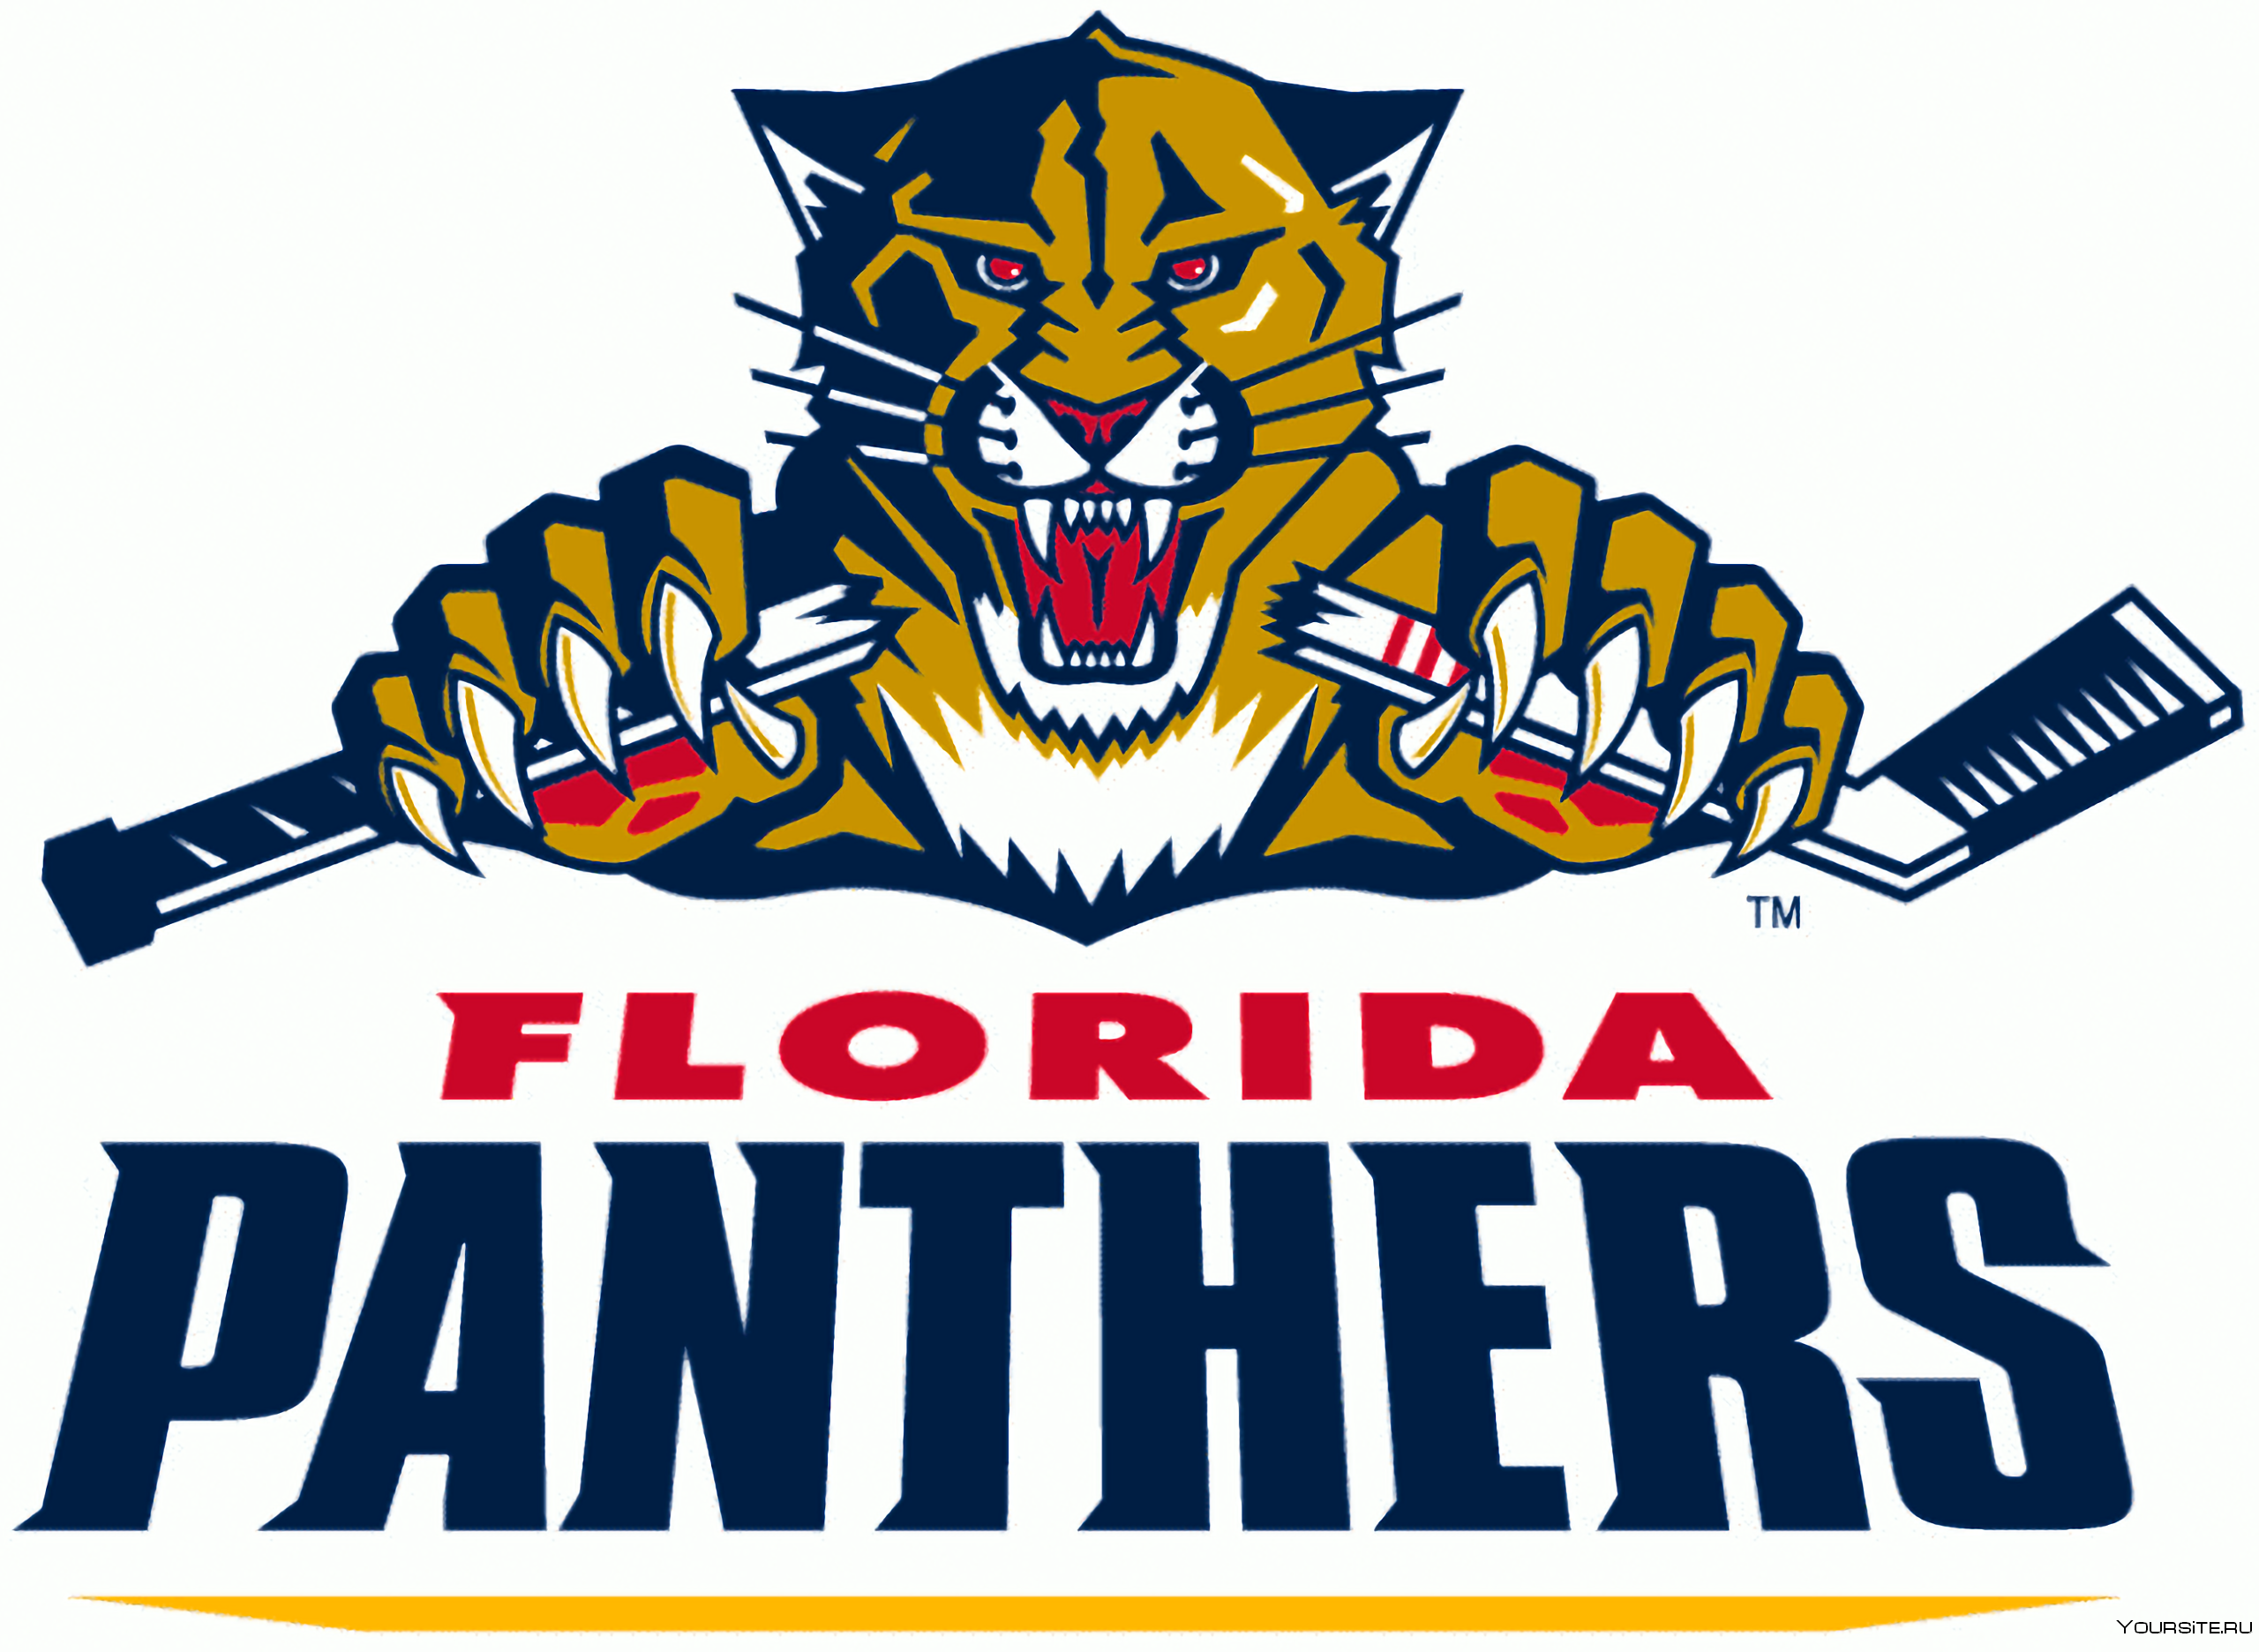 Официальные сайты хоккейных команд. Хоккейный клуб Флорида Пантерз. Эмблема хоккейной команды Флорида Пантерс. Хк Флорида Пантерз логотип. Логотип эмблема клуба Флорида Пантерс.